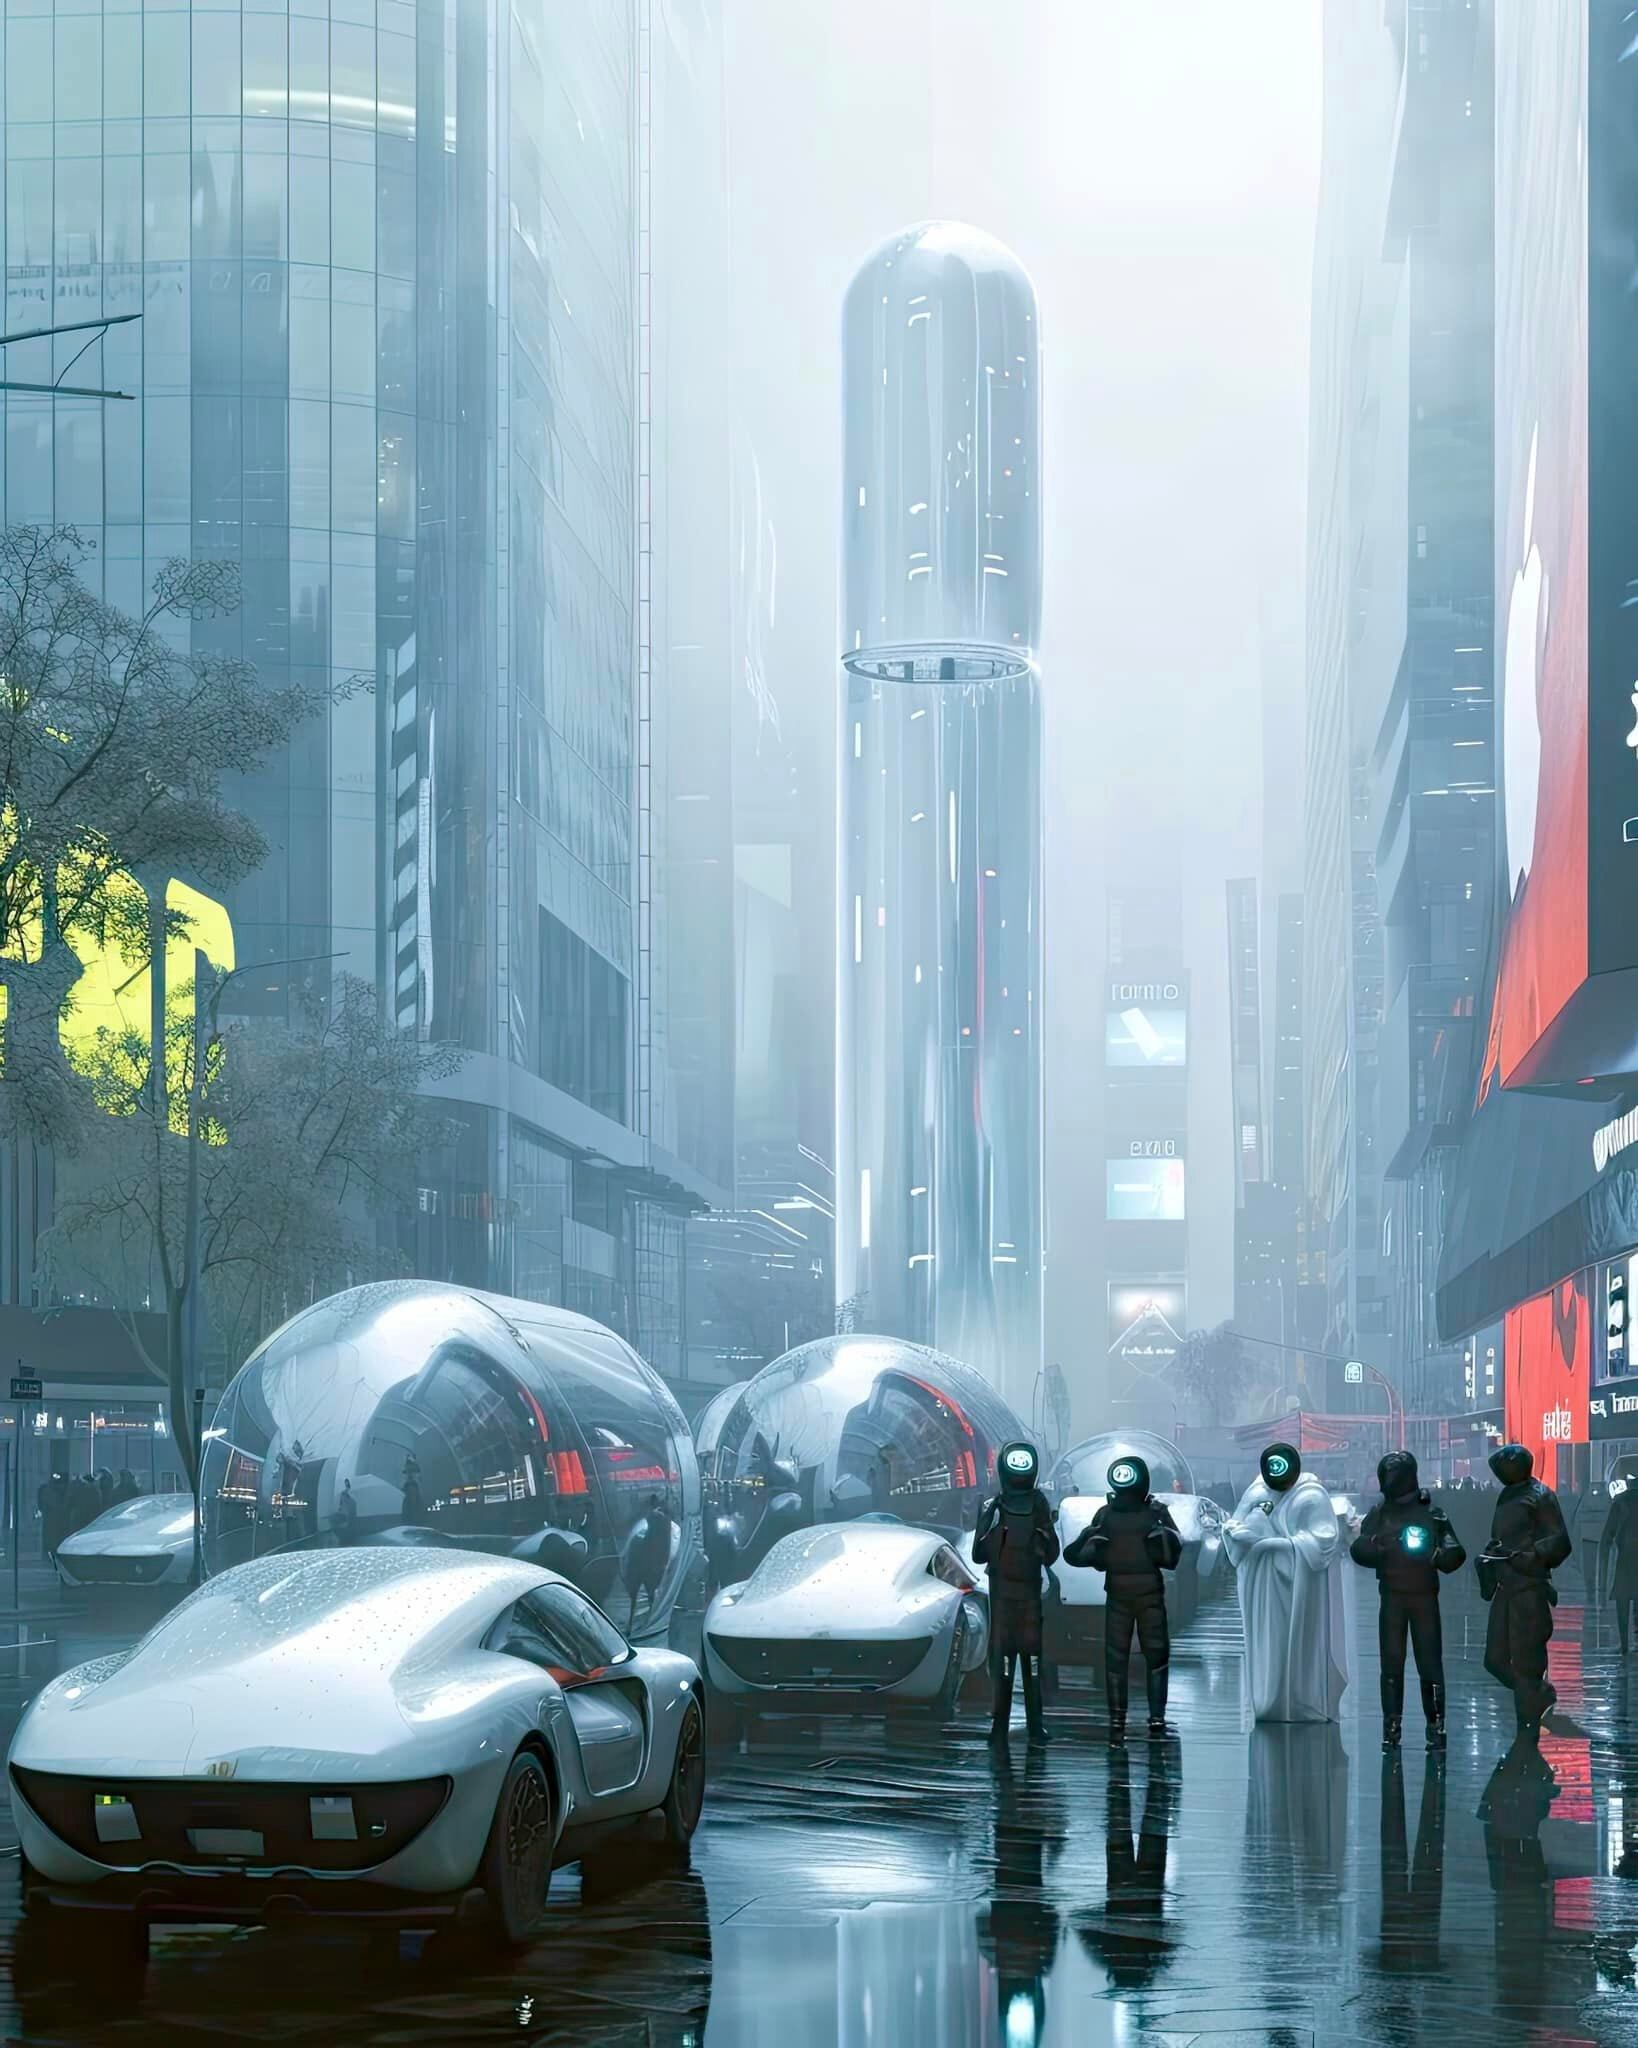 Las calles con los carros futuristas y lentes de realidad virtual según una IA